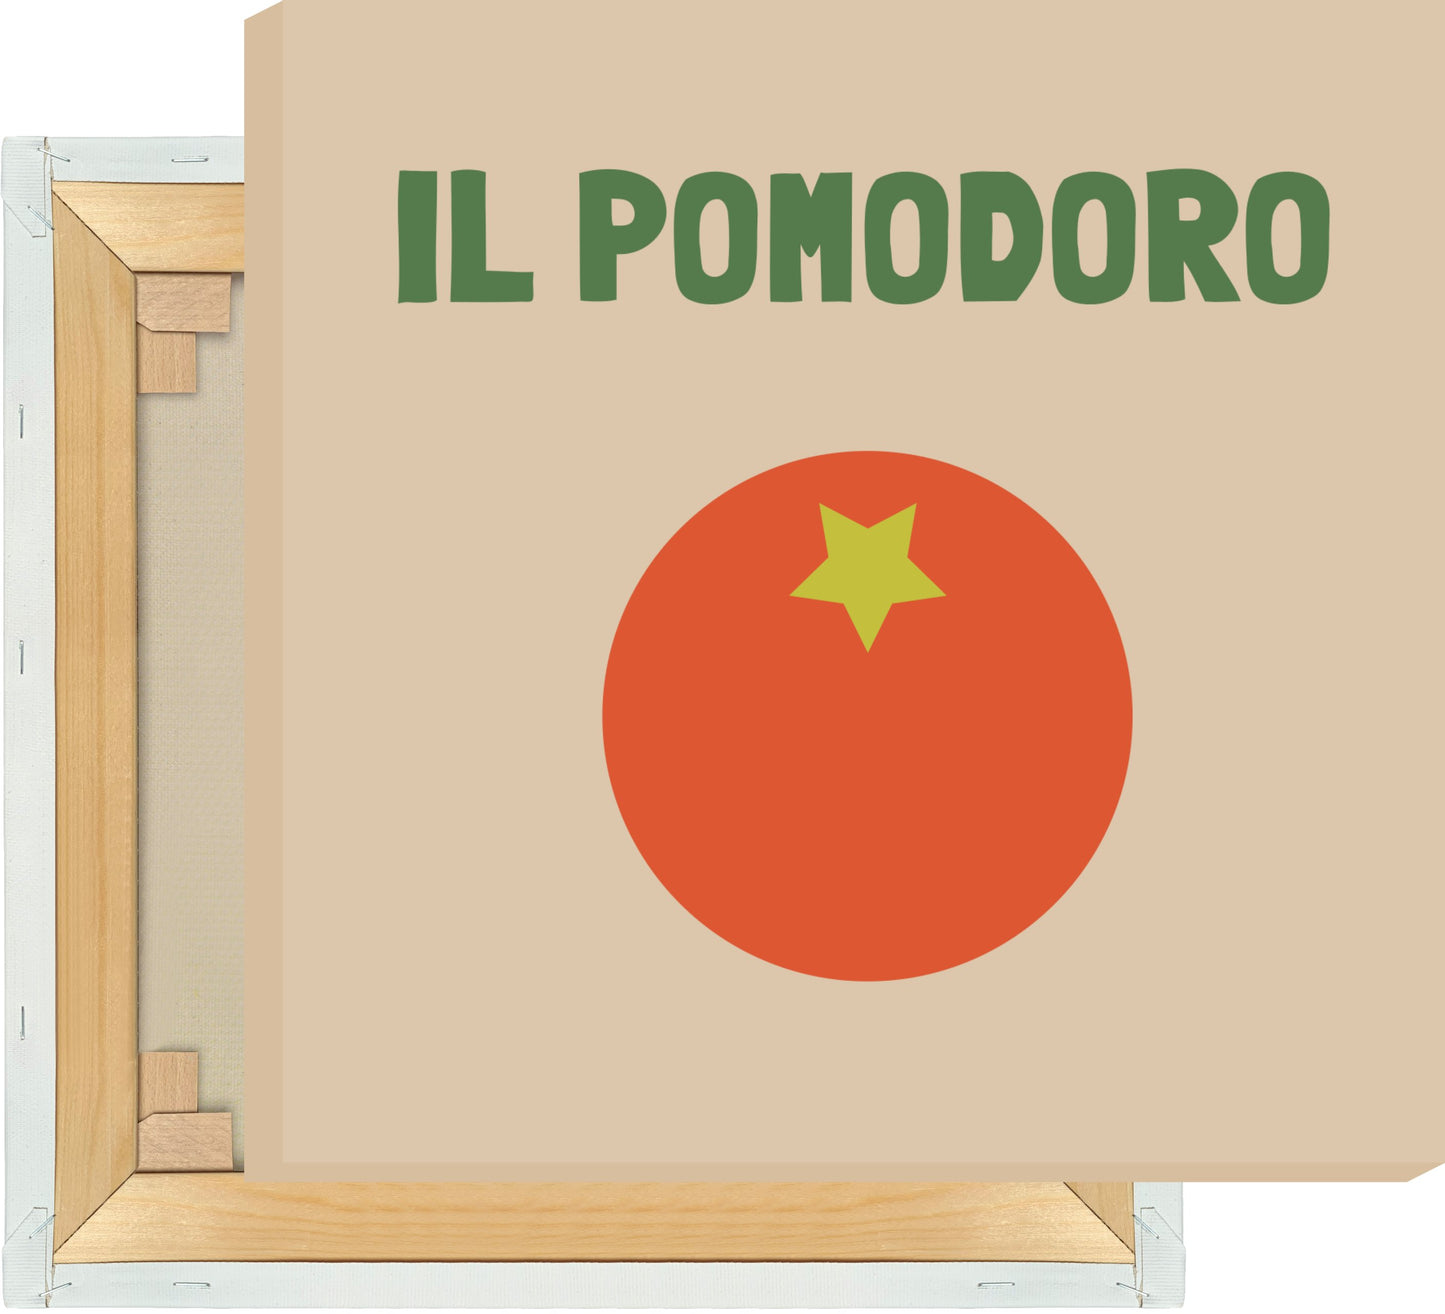 Leinwand Il Pomodoro - Tomate - La Dolce Vita Collection